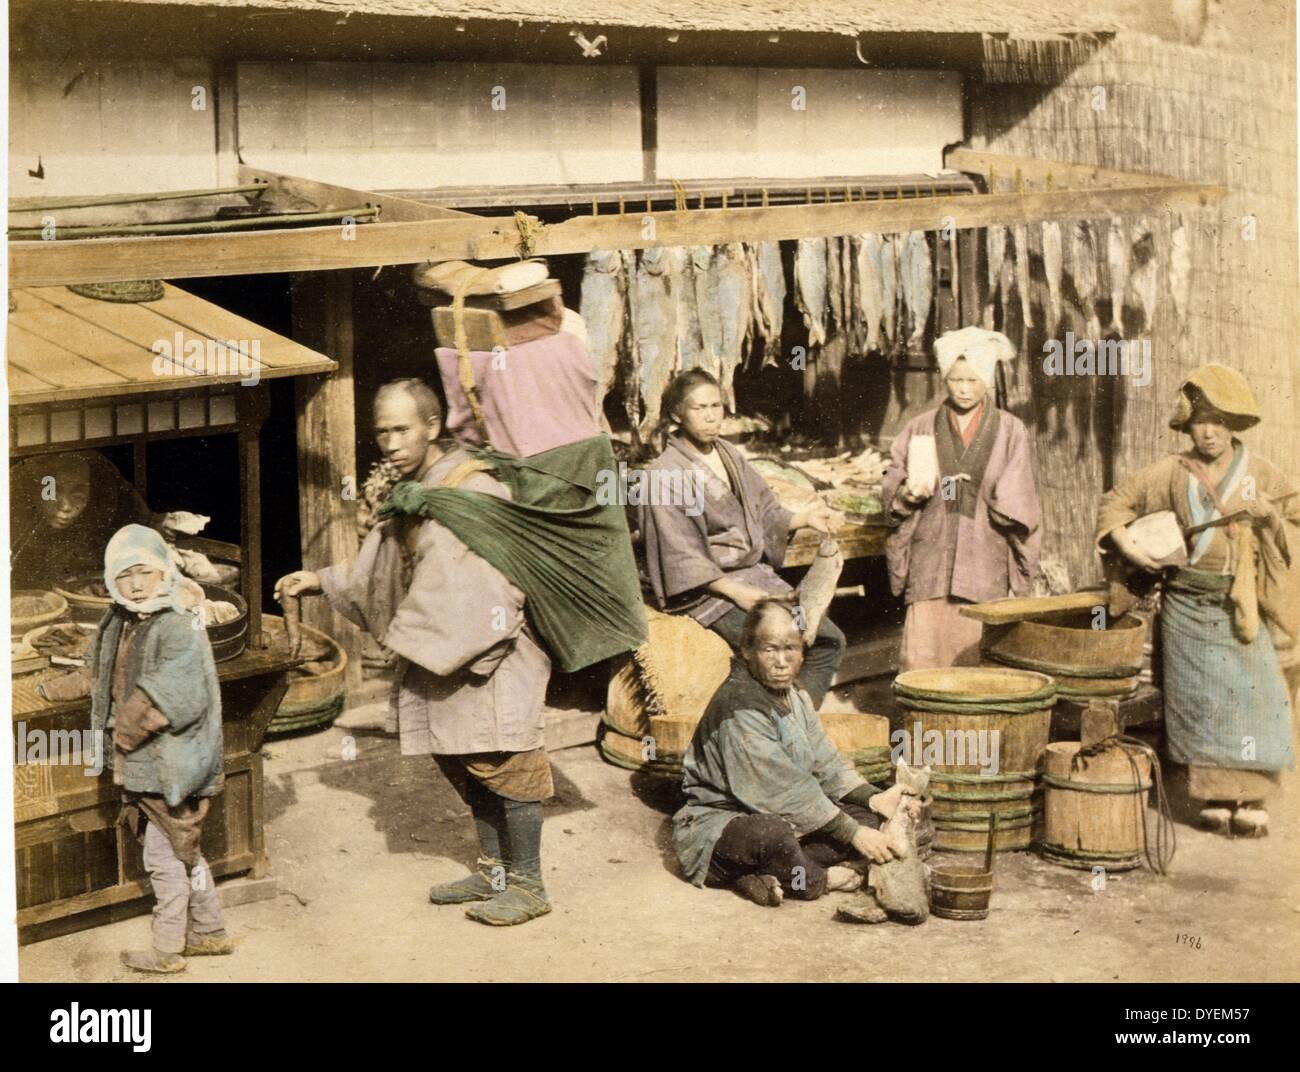 Vista esterna di un giapponese al mercato del pesce con diverse persone, acquirenti e merchant, tenendo pesce, anche un facchino con pacchetto grande sulla schiena e una donna che gioca a shamisen. 1877. Stampa fotografica, colorate a mano con acquerello Foto Stock